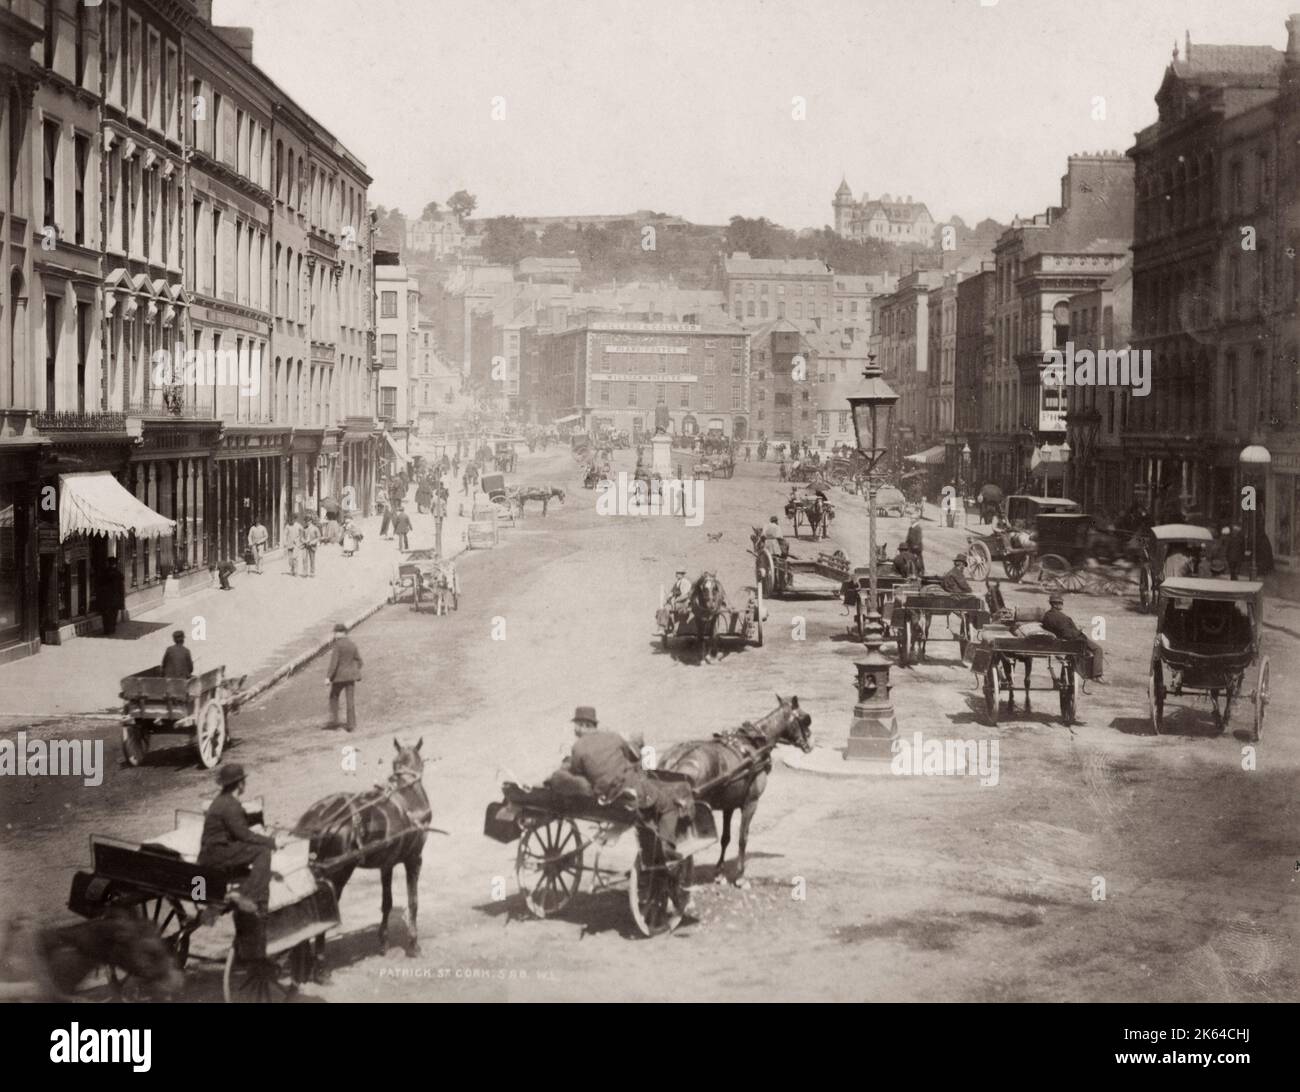 Fotografia d'epoca del XIX secolo - Patrick Street Cork, Irlanda con pedoni e traffico trainato da cavalli. Studio William Lawrence. Foto Stock